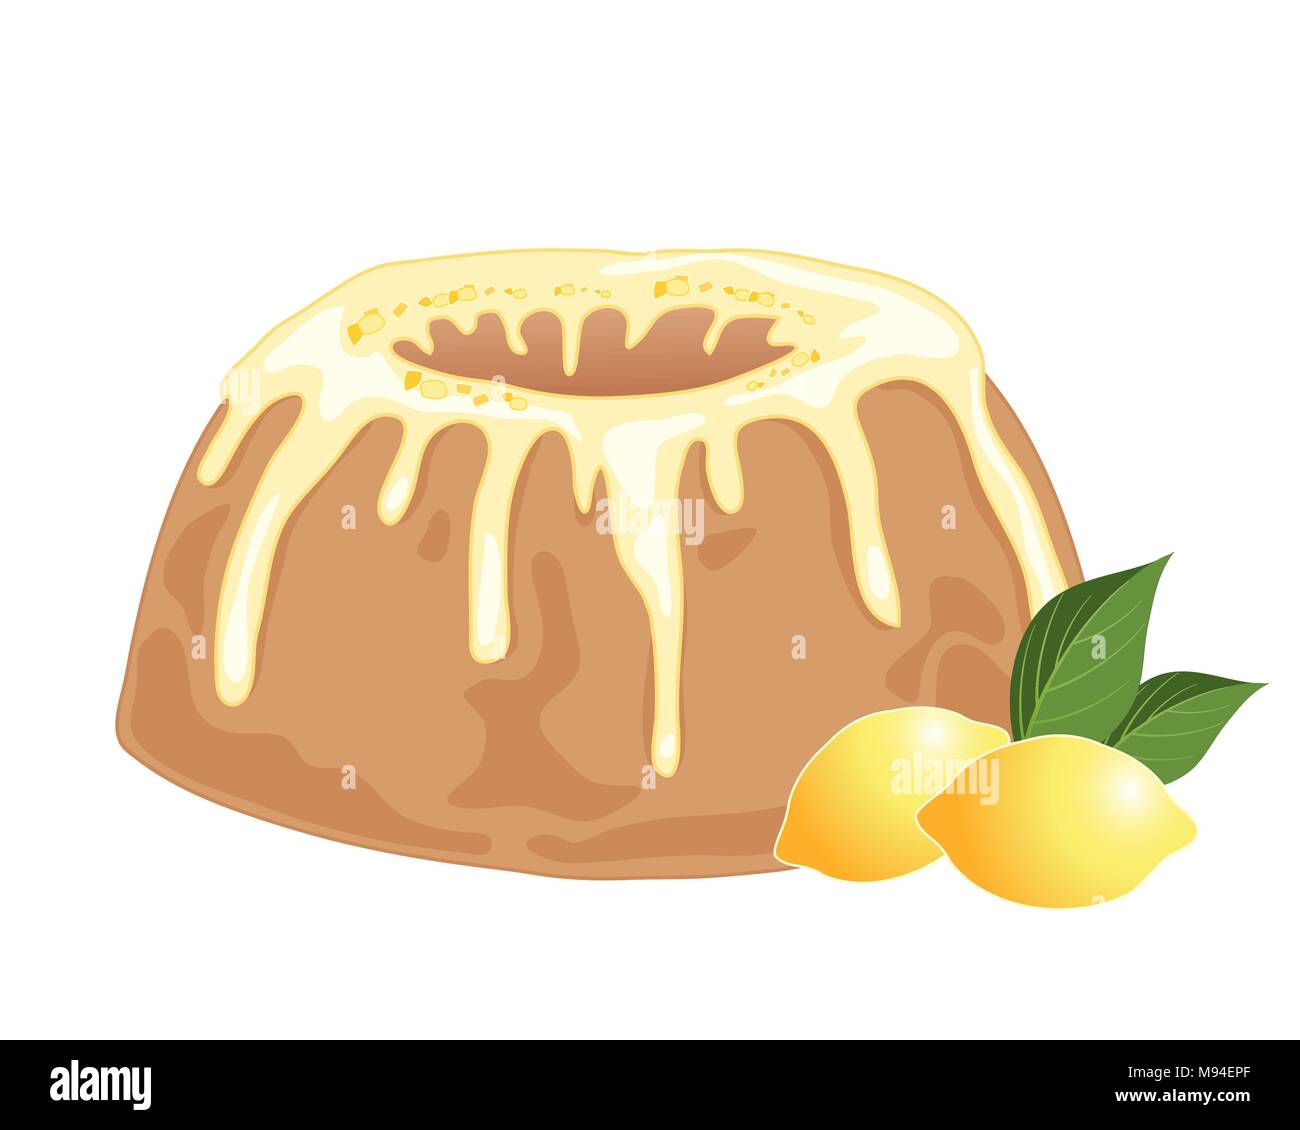 Un vecteur illustration en eps 10 format d'une glace au chocolat citron ronde avec citron et glaçage des bits sur un fond blanc avec deux citrons entiers Illustration de Vecteur